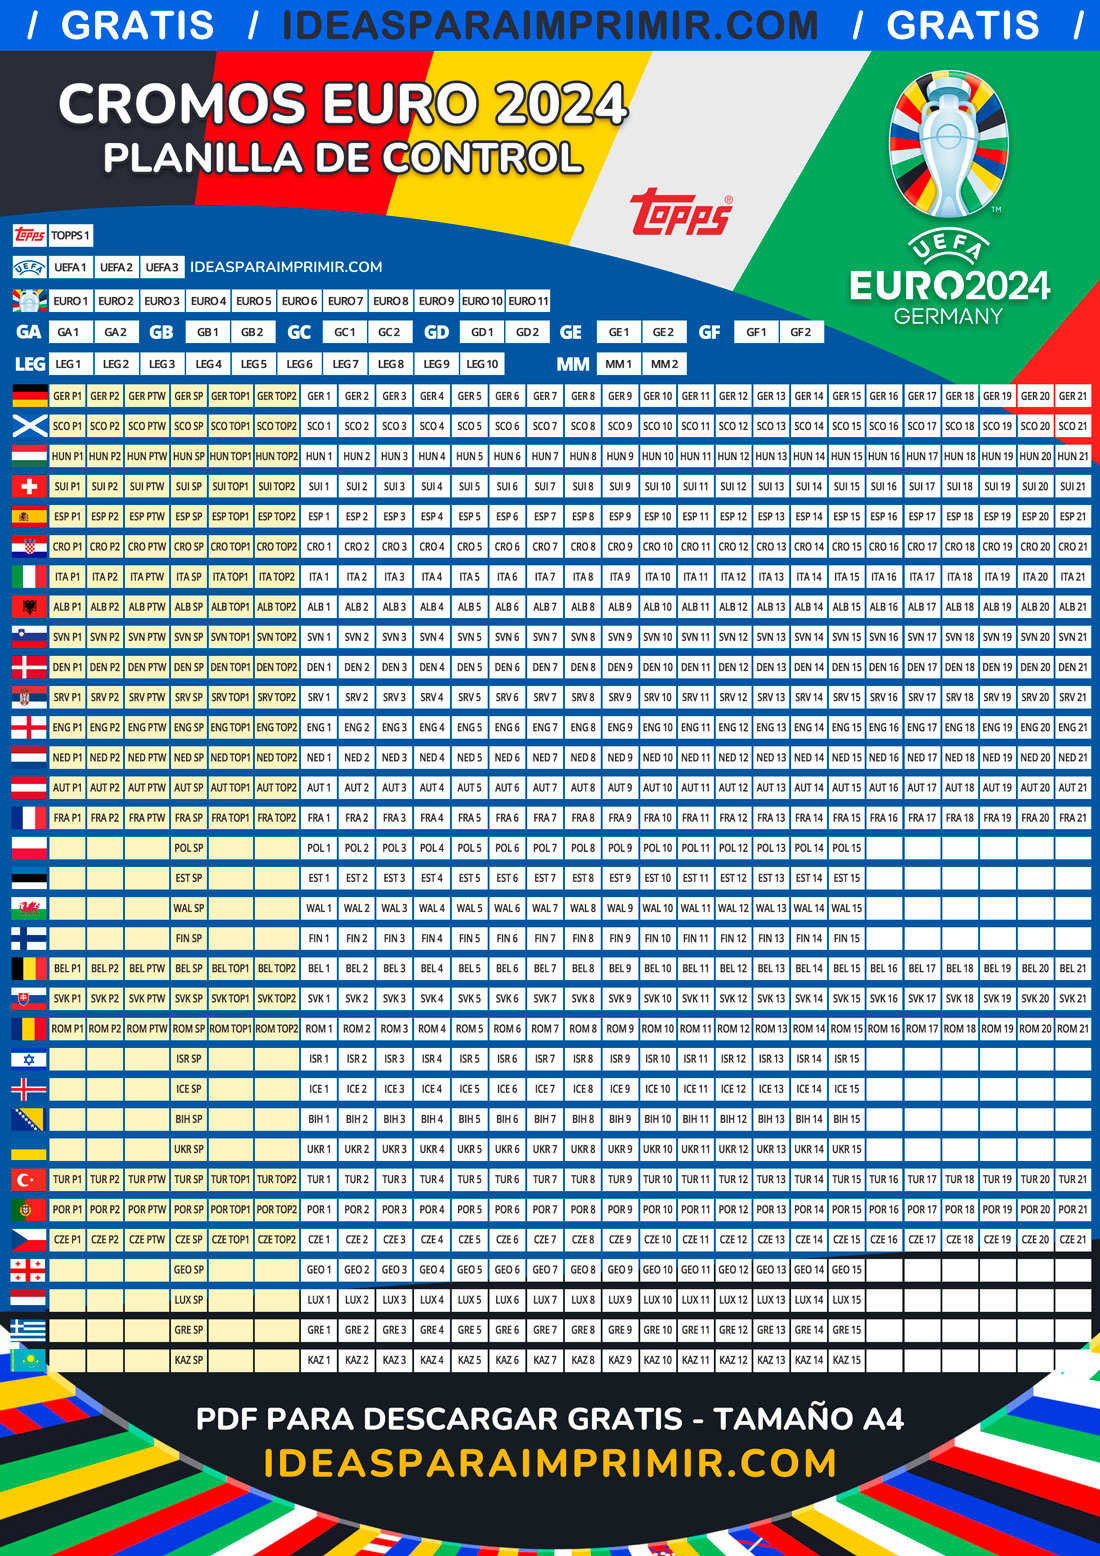 Planilla de control para las cromos del álbum UEFA EURO 2024 GERMANY